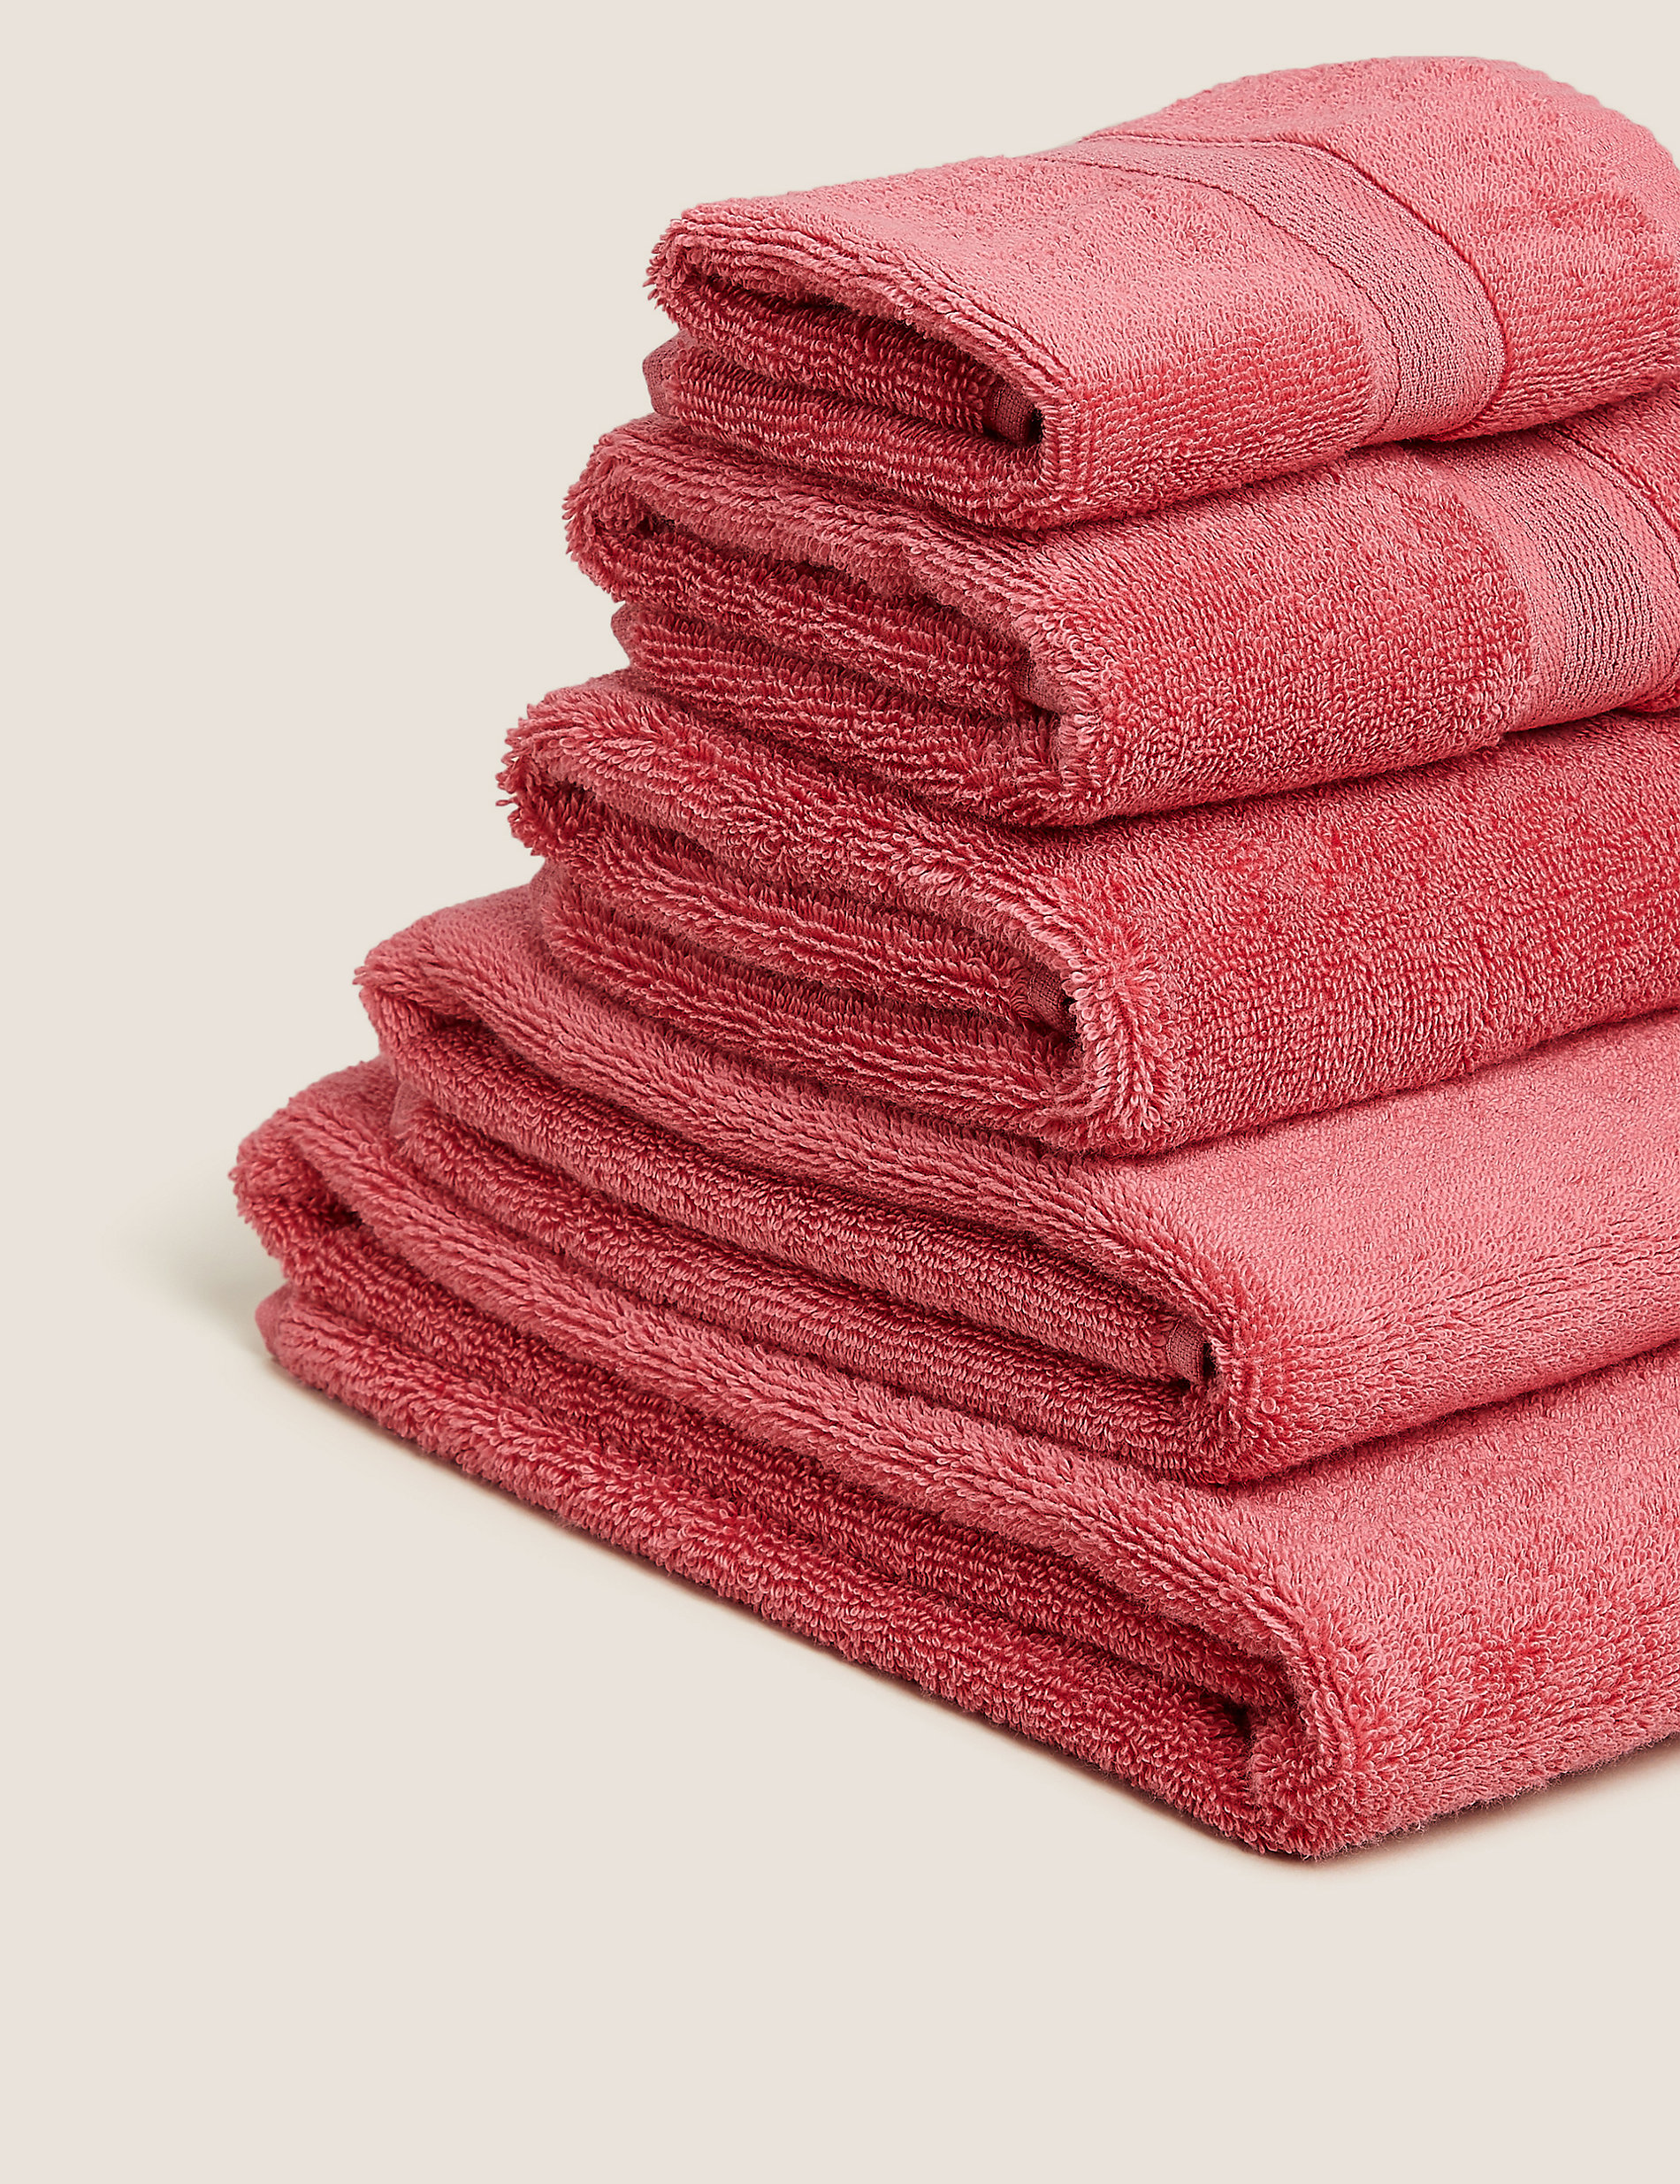 Superweiches, antibakterielles Handtuch aus reiner Baumwolle